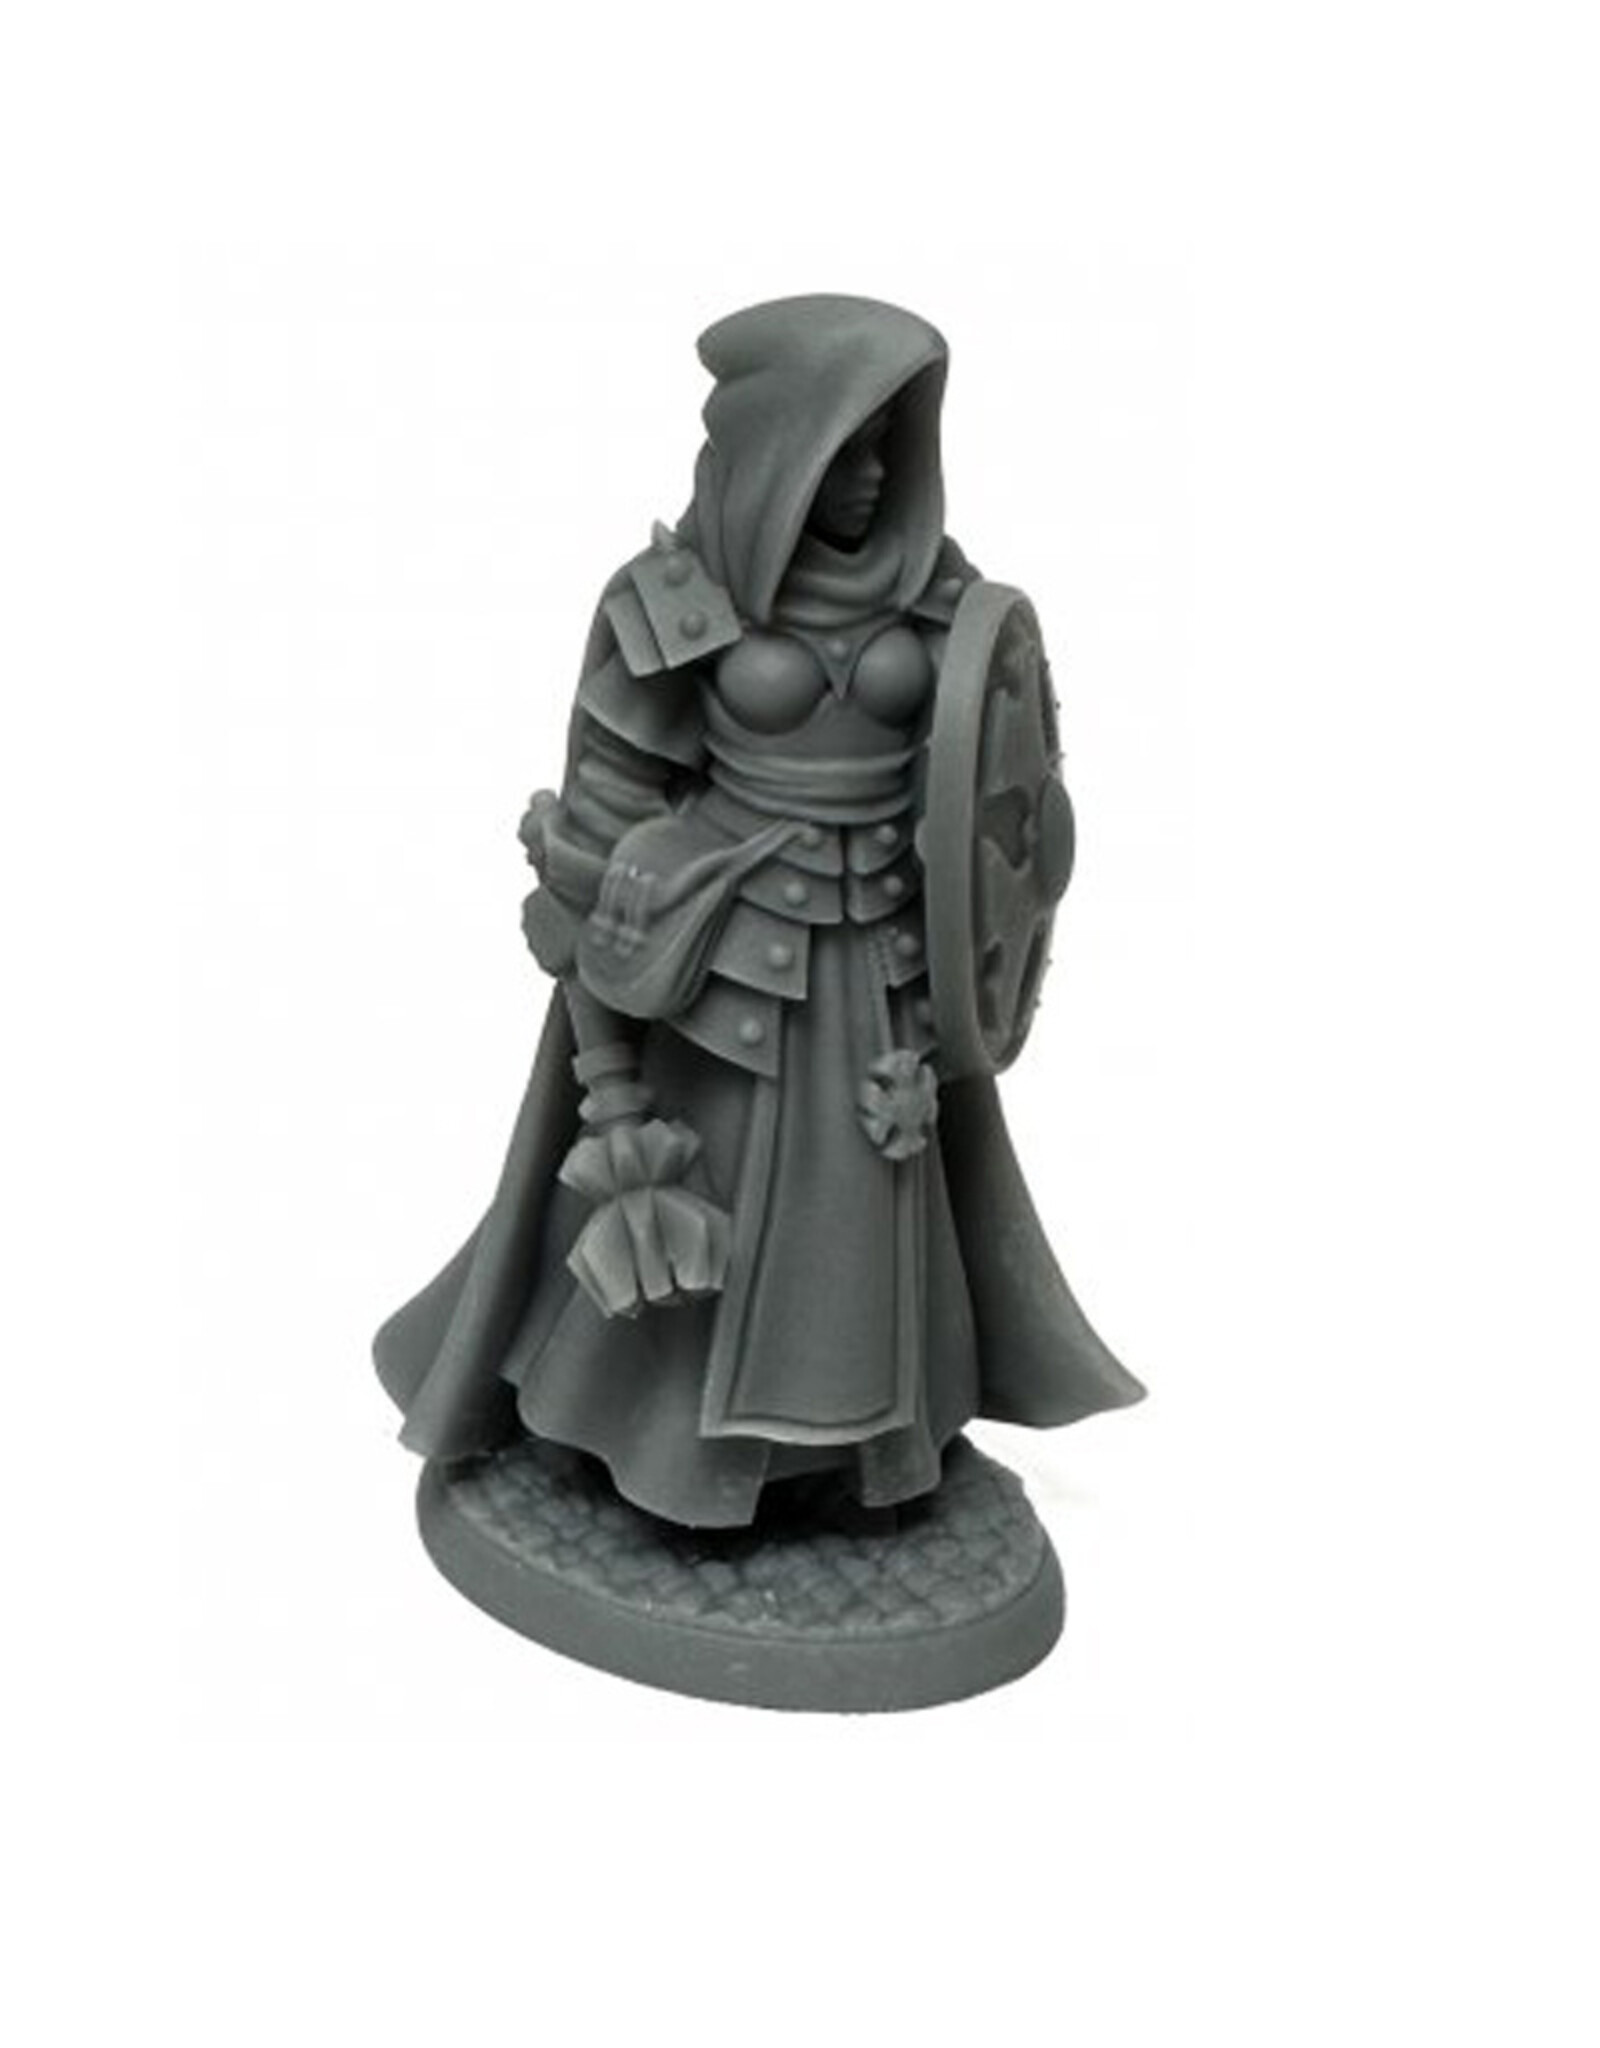 Reaper Reaper Minis: Sister Ailene #07023